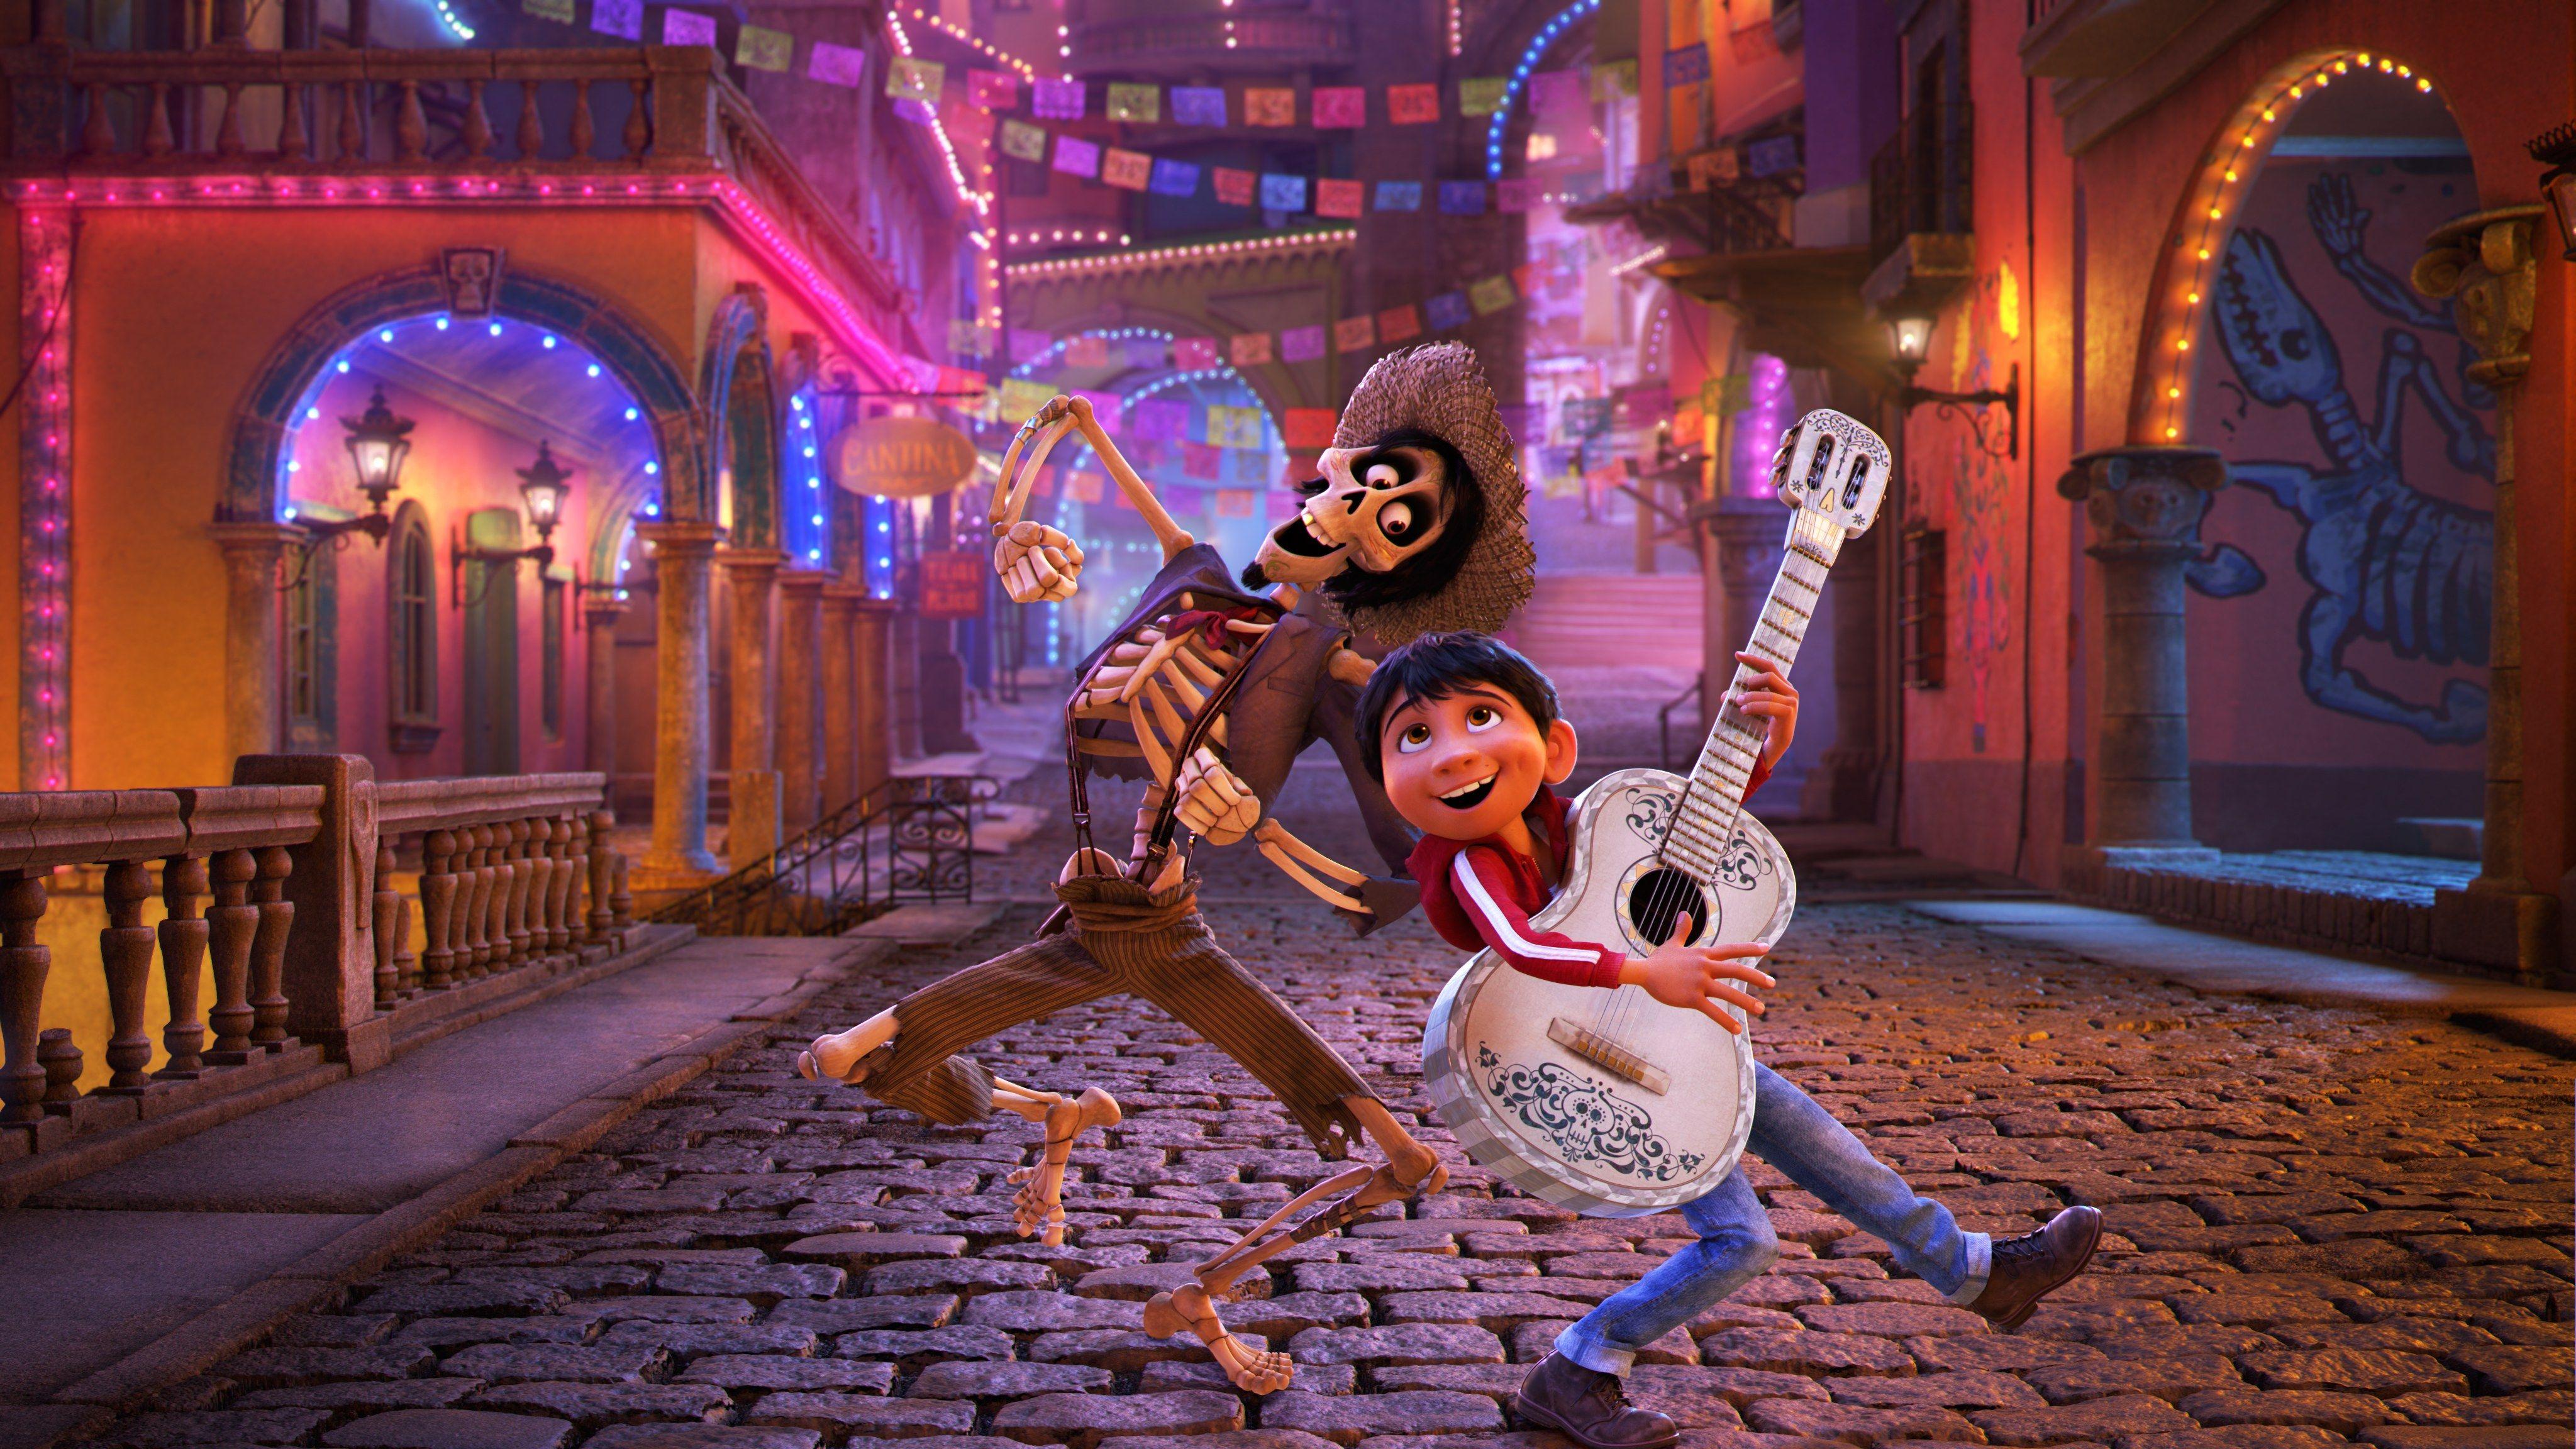 Wallpaper Miguel Rivera, Hector, Coco, Animation, Disney, Pixar